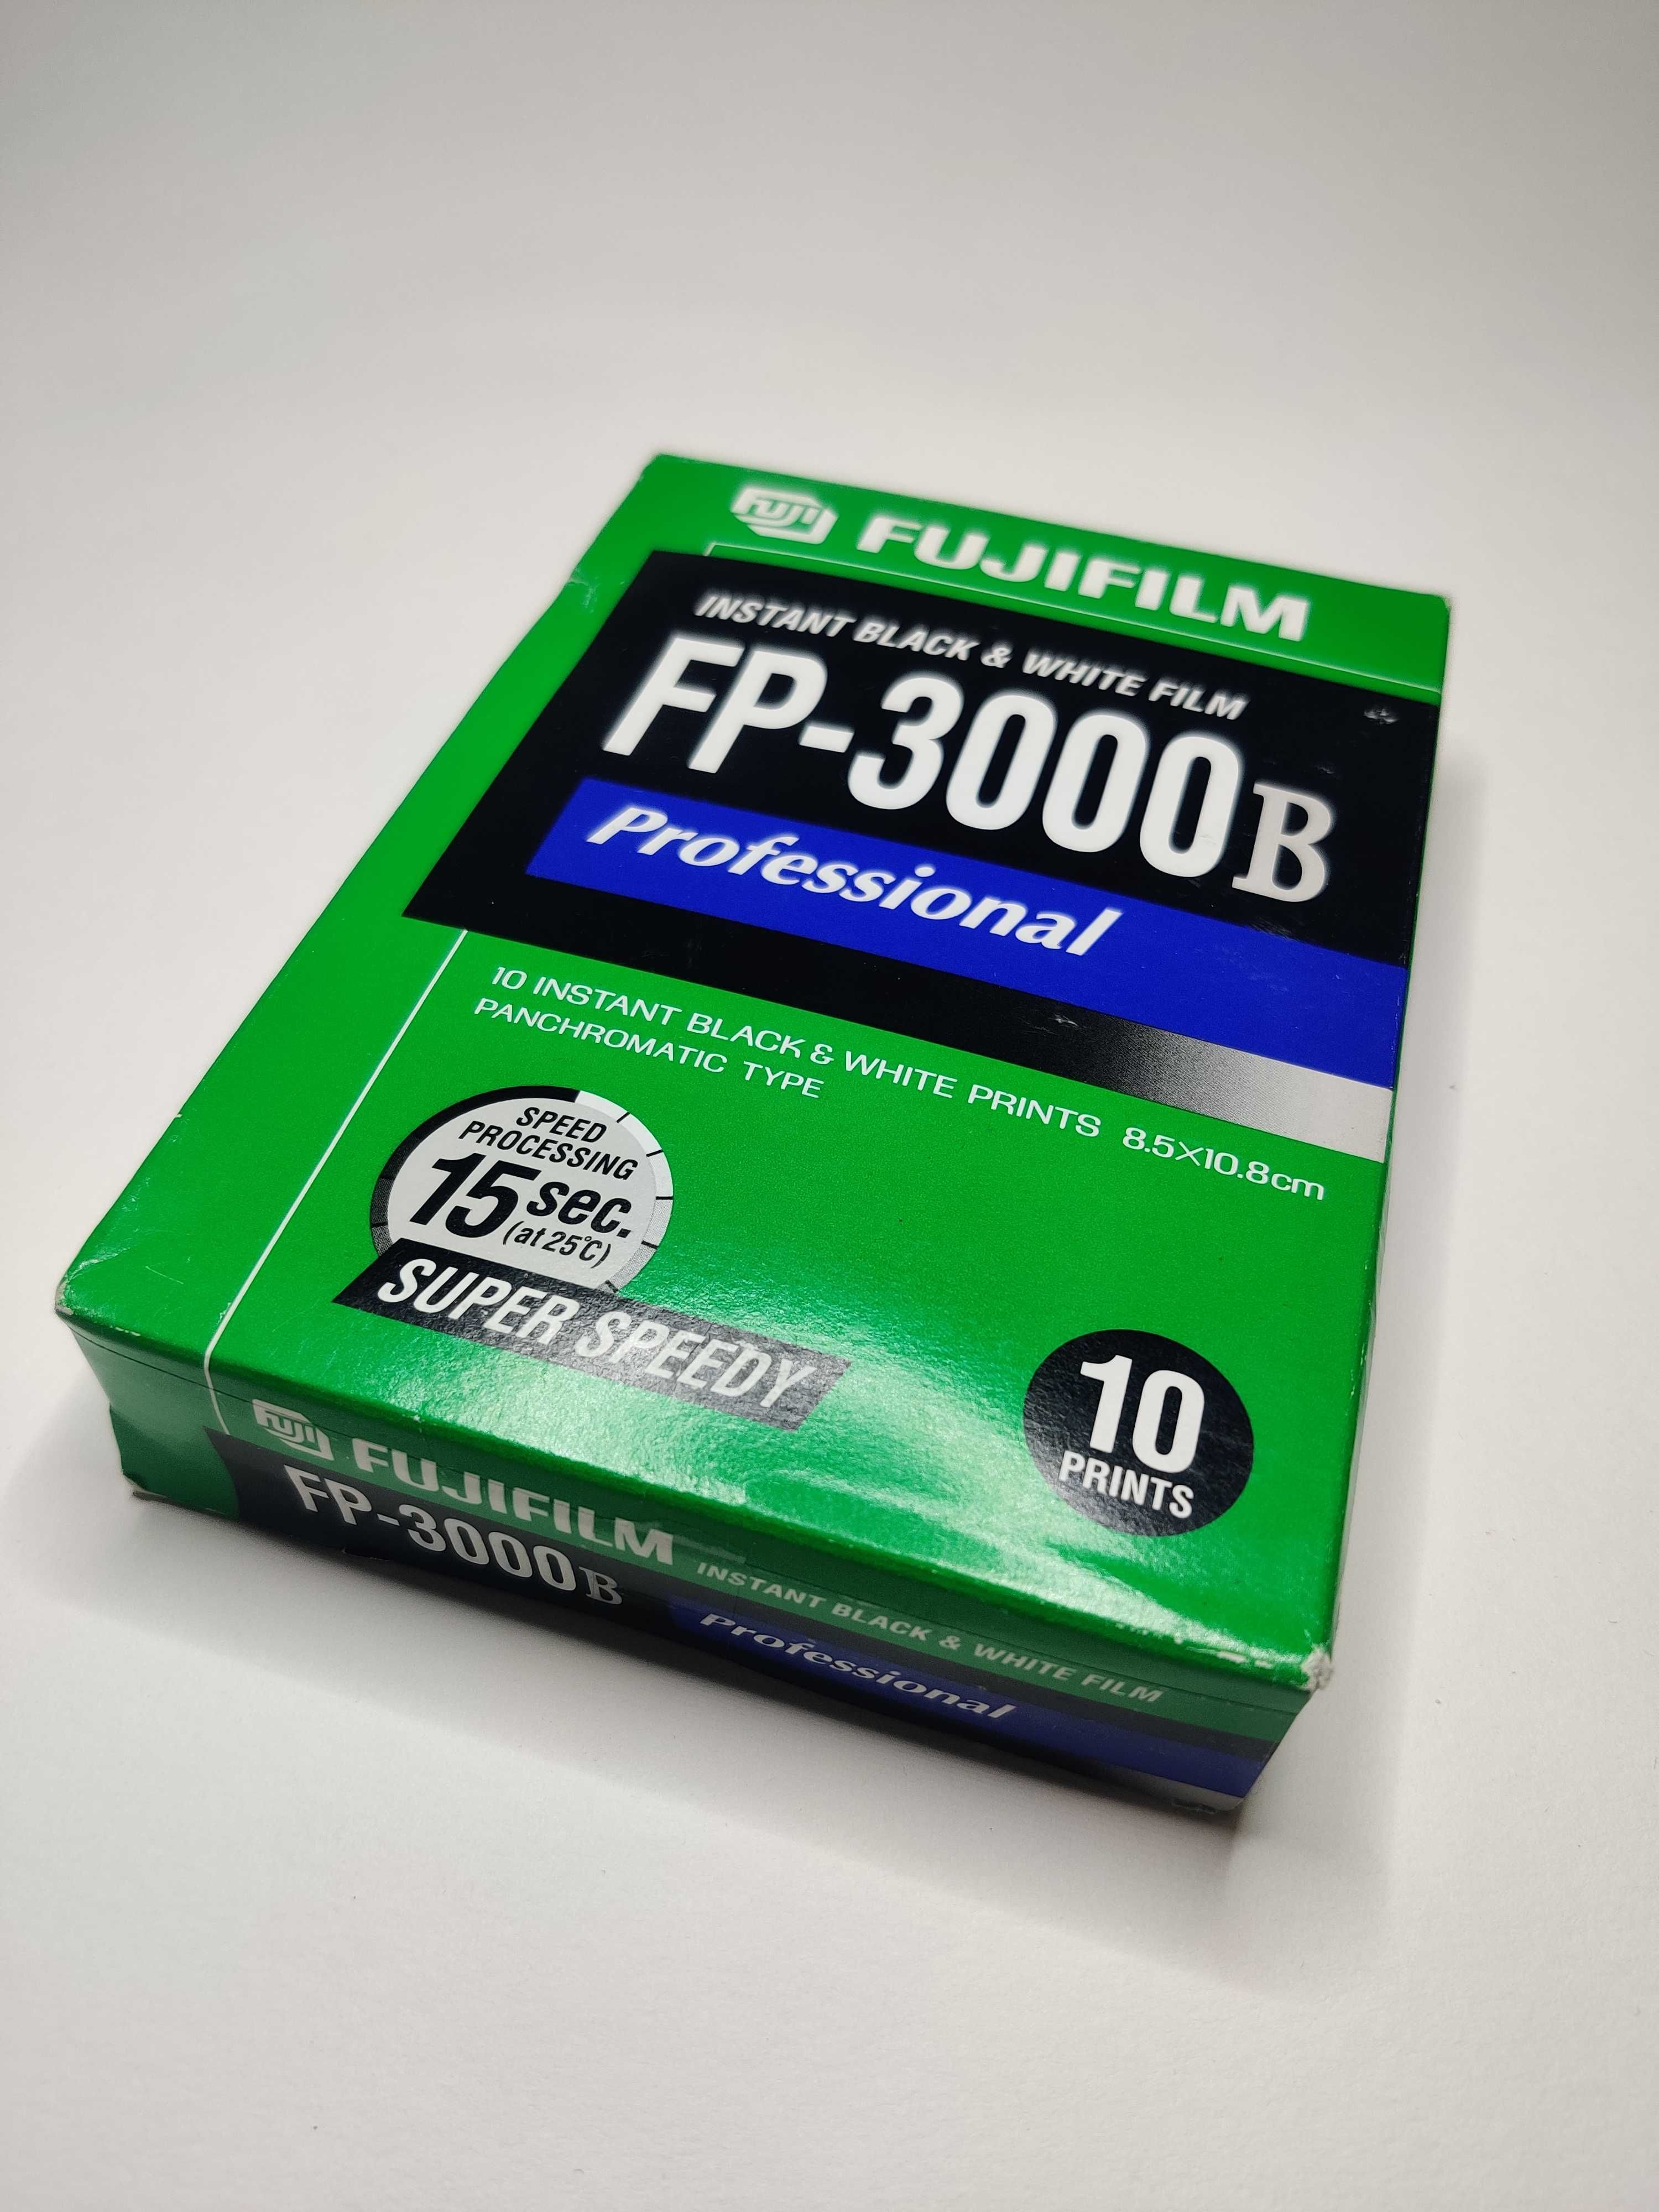 Materiał natychmiastiowy Fujifilm FP-3000B Professional instant film